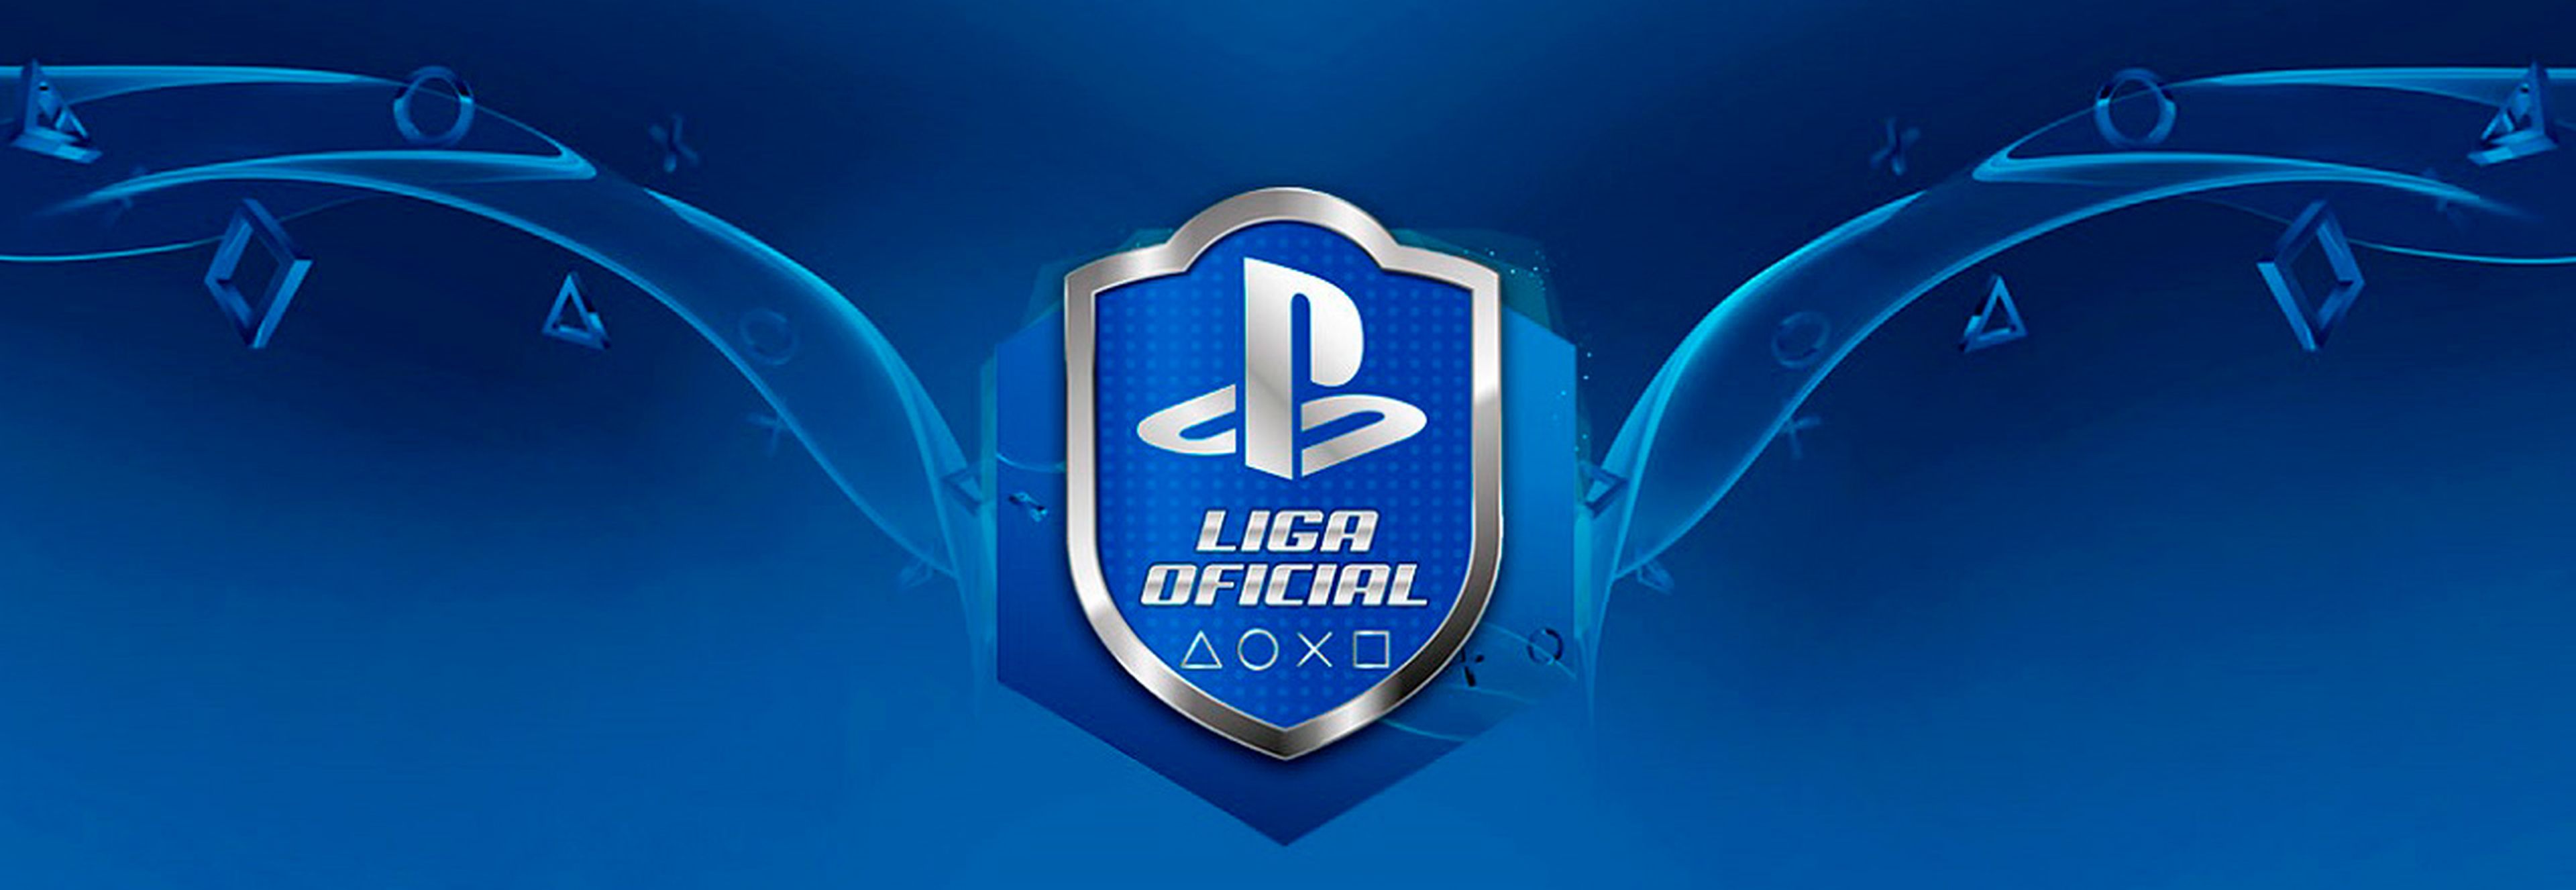 Liga Oficial PlayStation